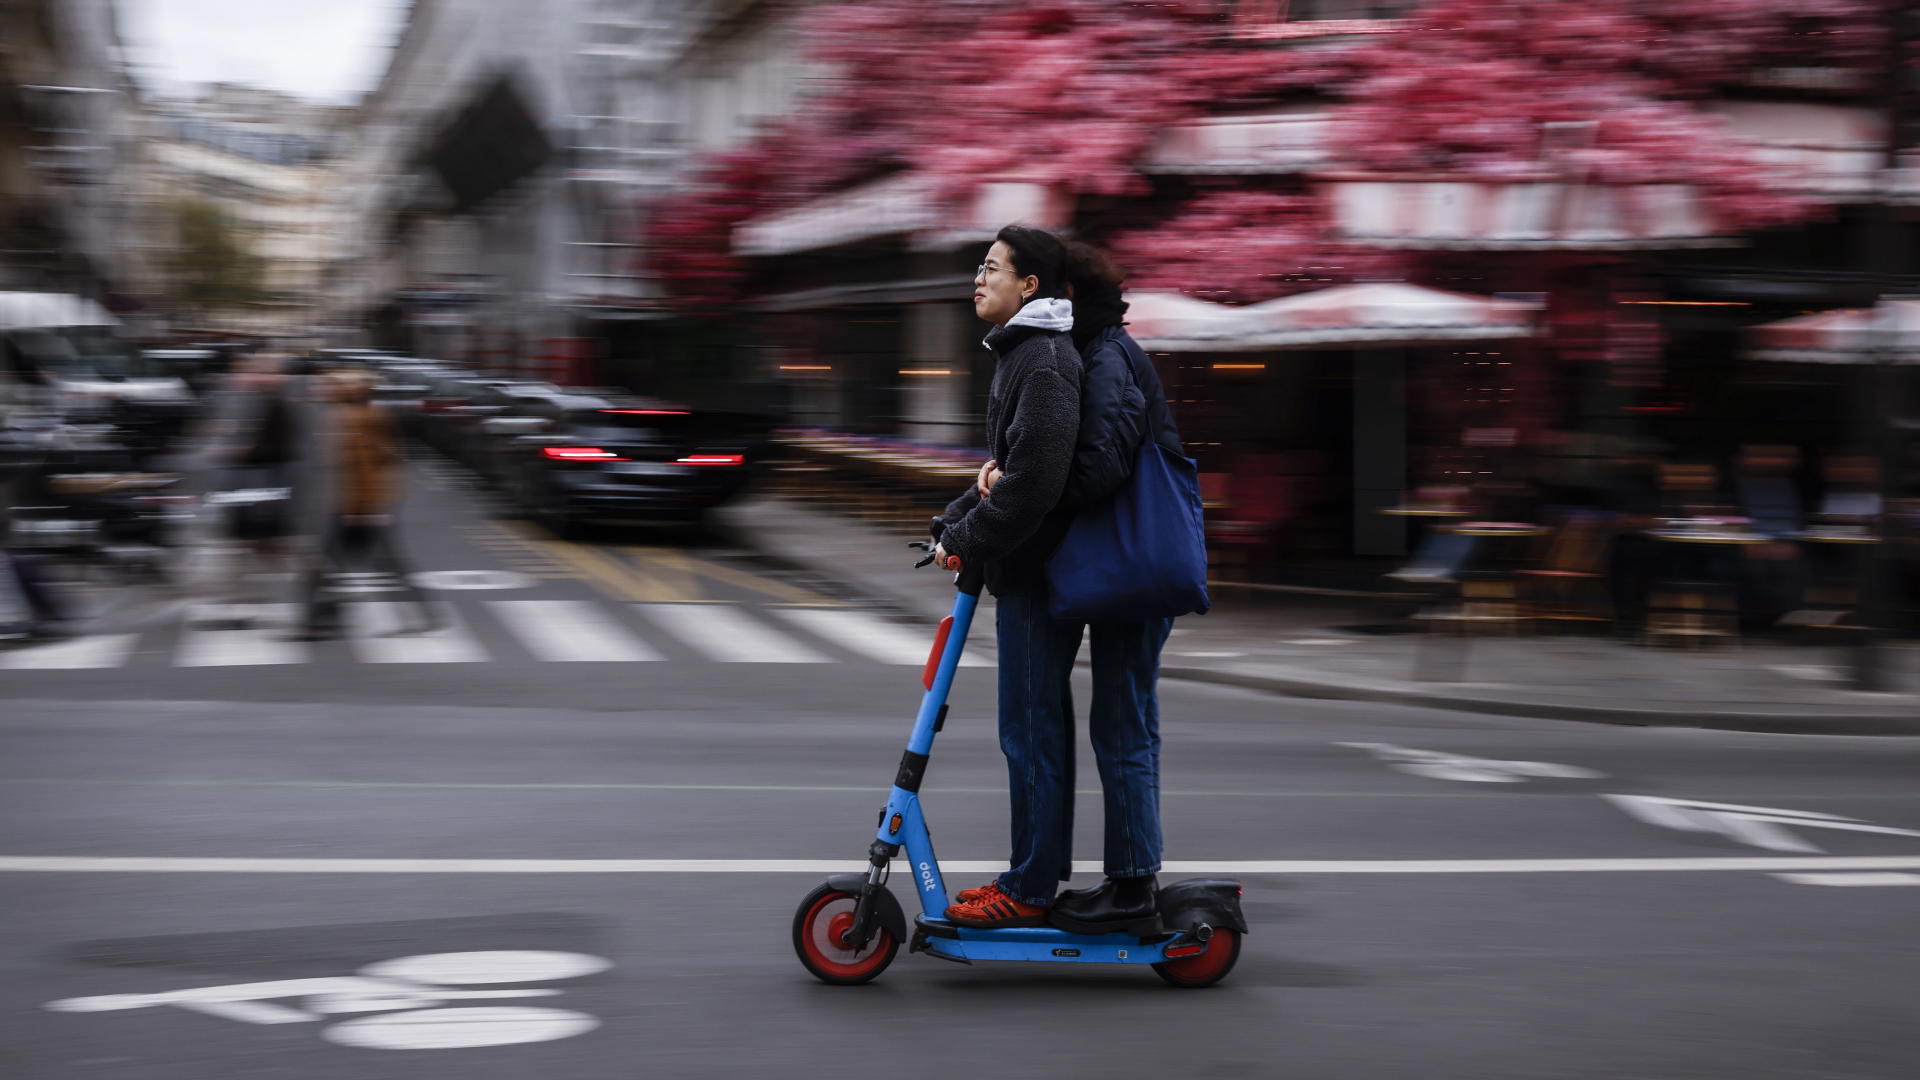 Pariser stimmen über Verbot von E-Scootern ab